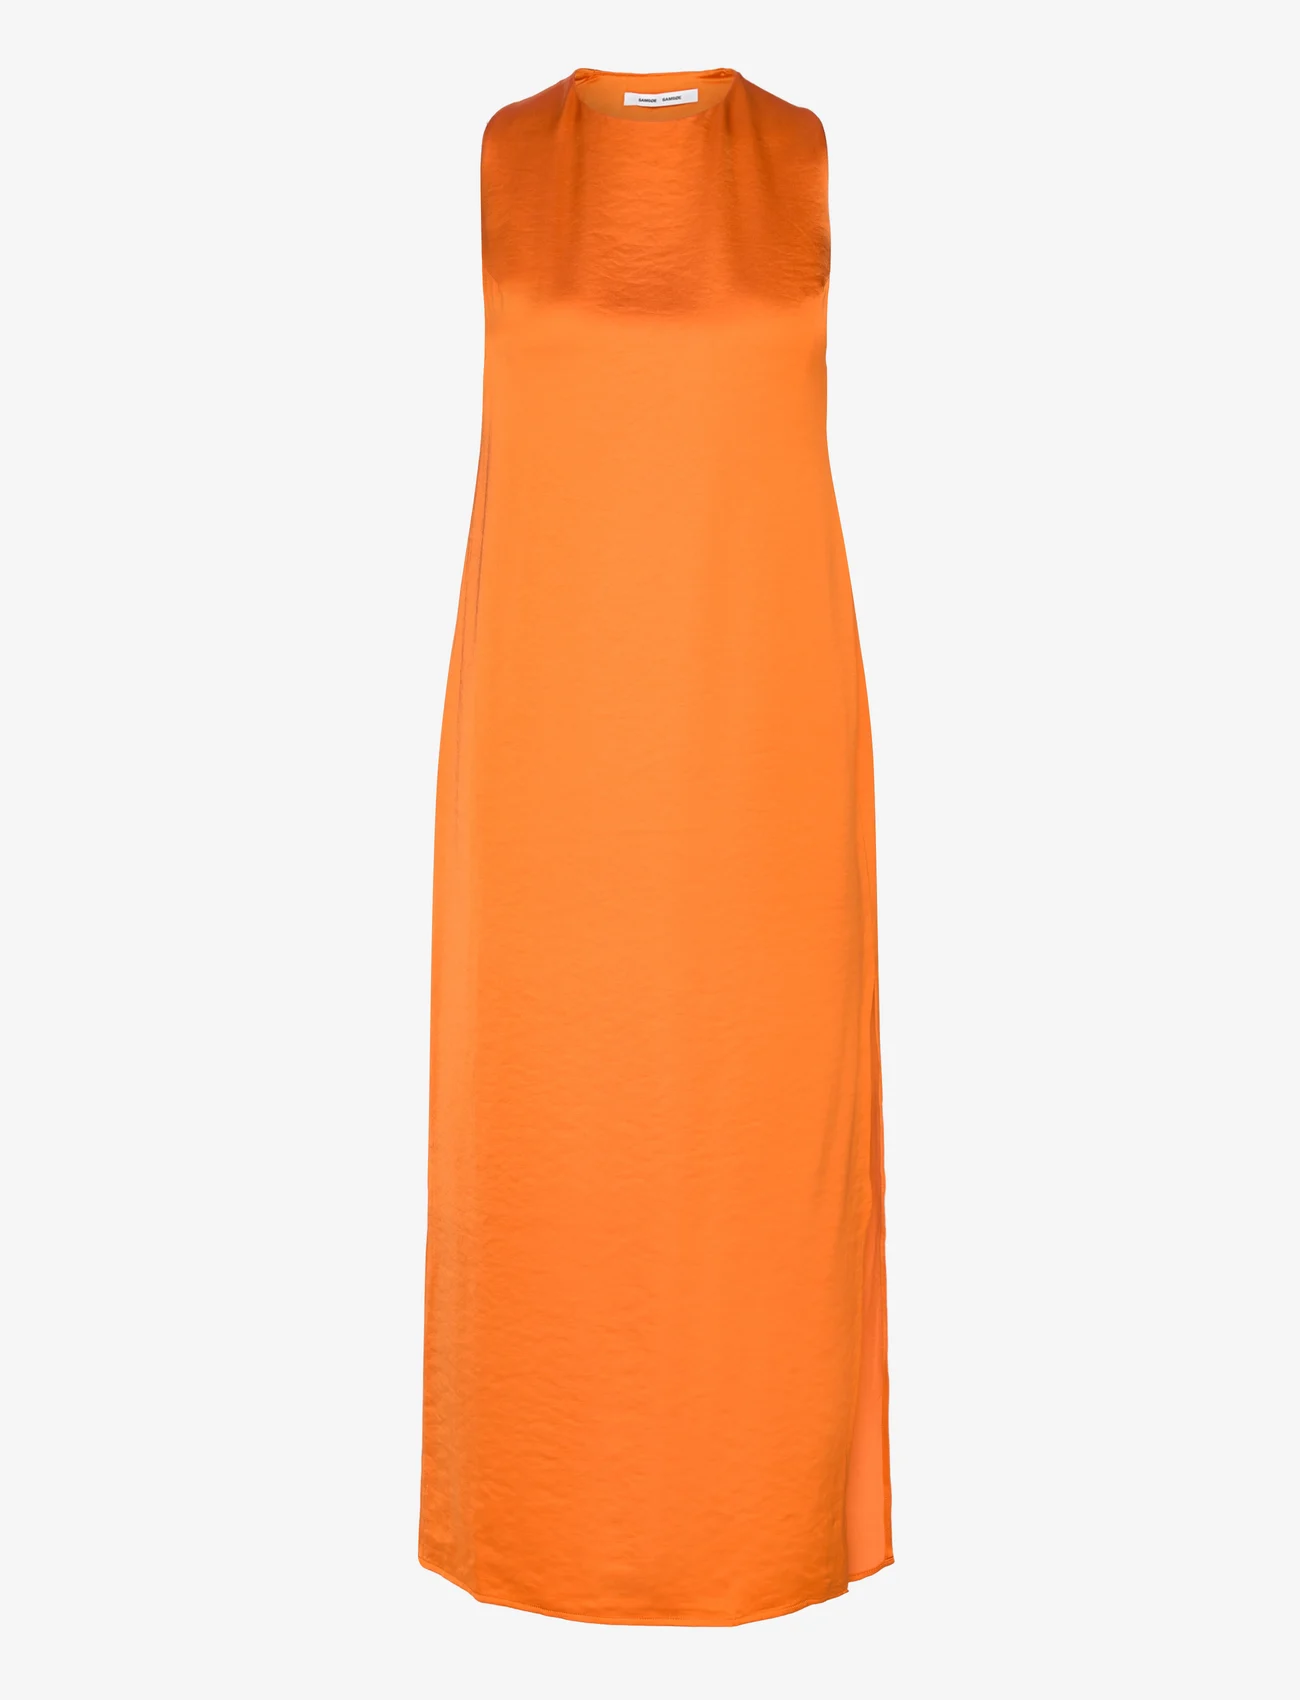 Samsøe Samsøe - Ellie dress 14773 - odzież imprezowa w cenach outletowych - russet orange - 0